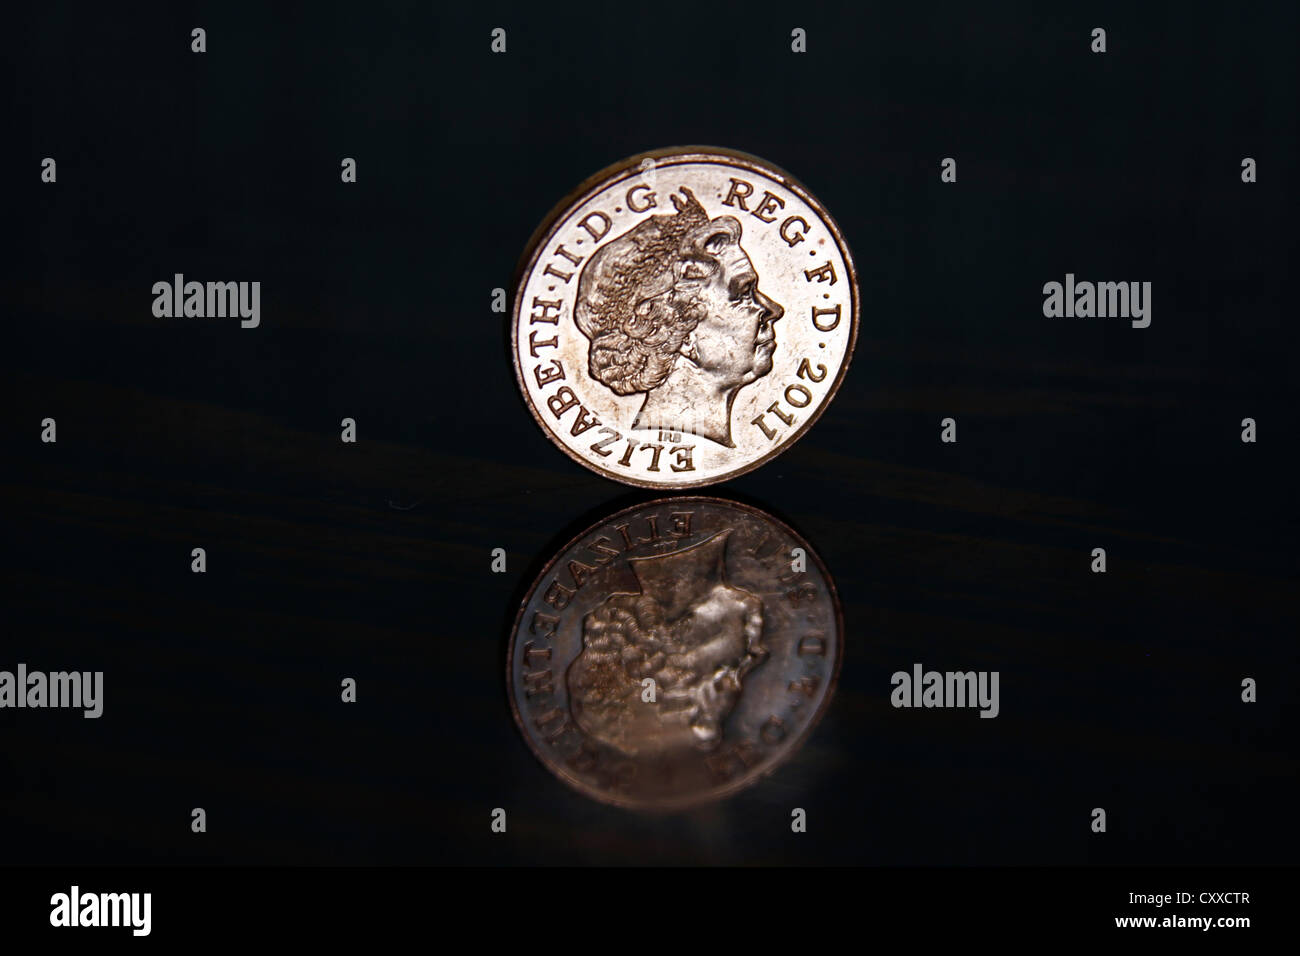 2 Pence, zwei Pence glänzende Münze auf eine hoch reflektierende schwarze Oberfläche Stockfoto